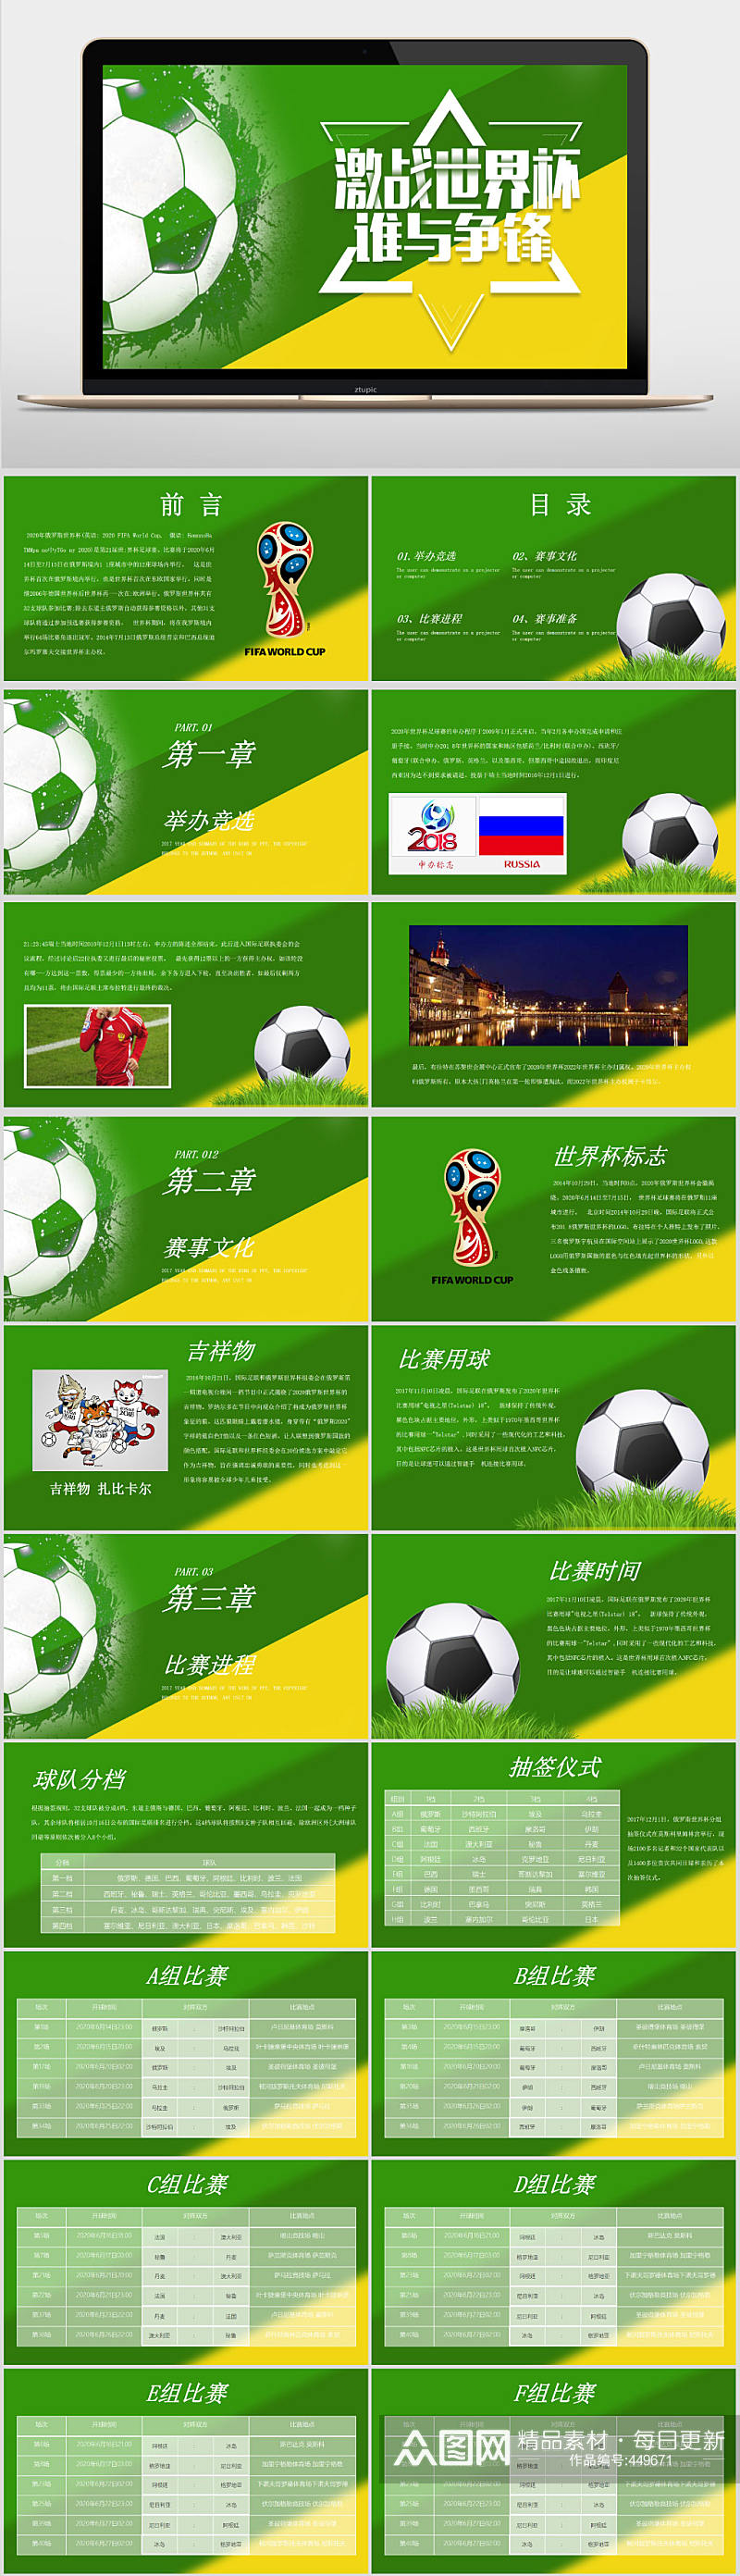 世界杯足球运动比赛ppt素材